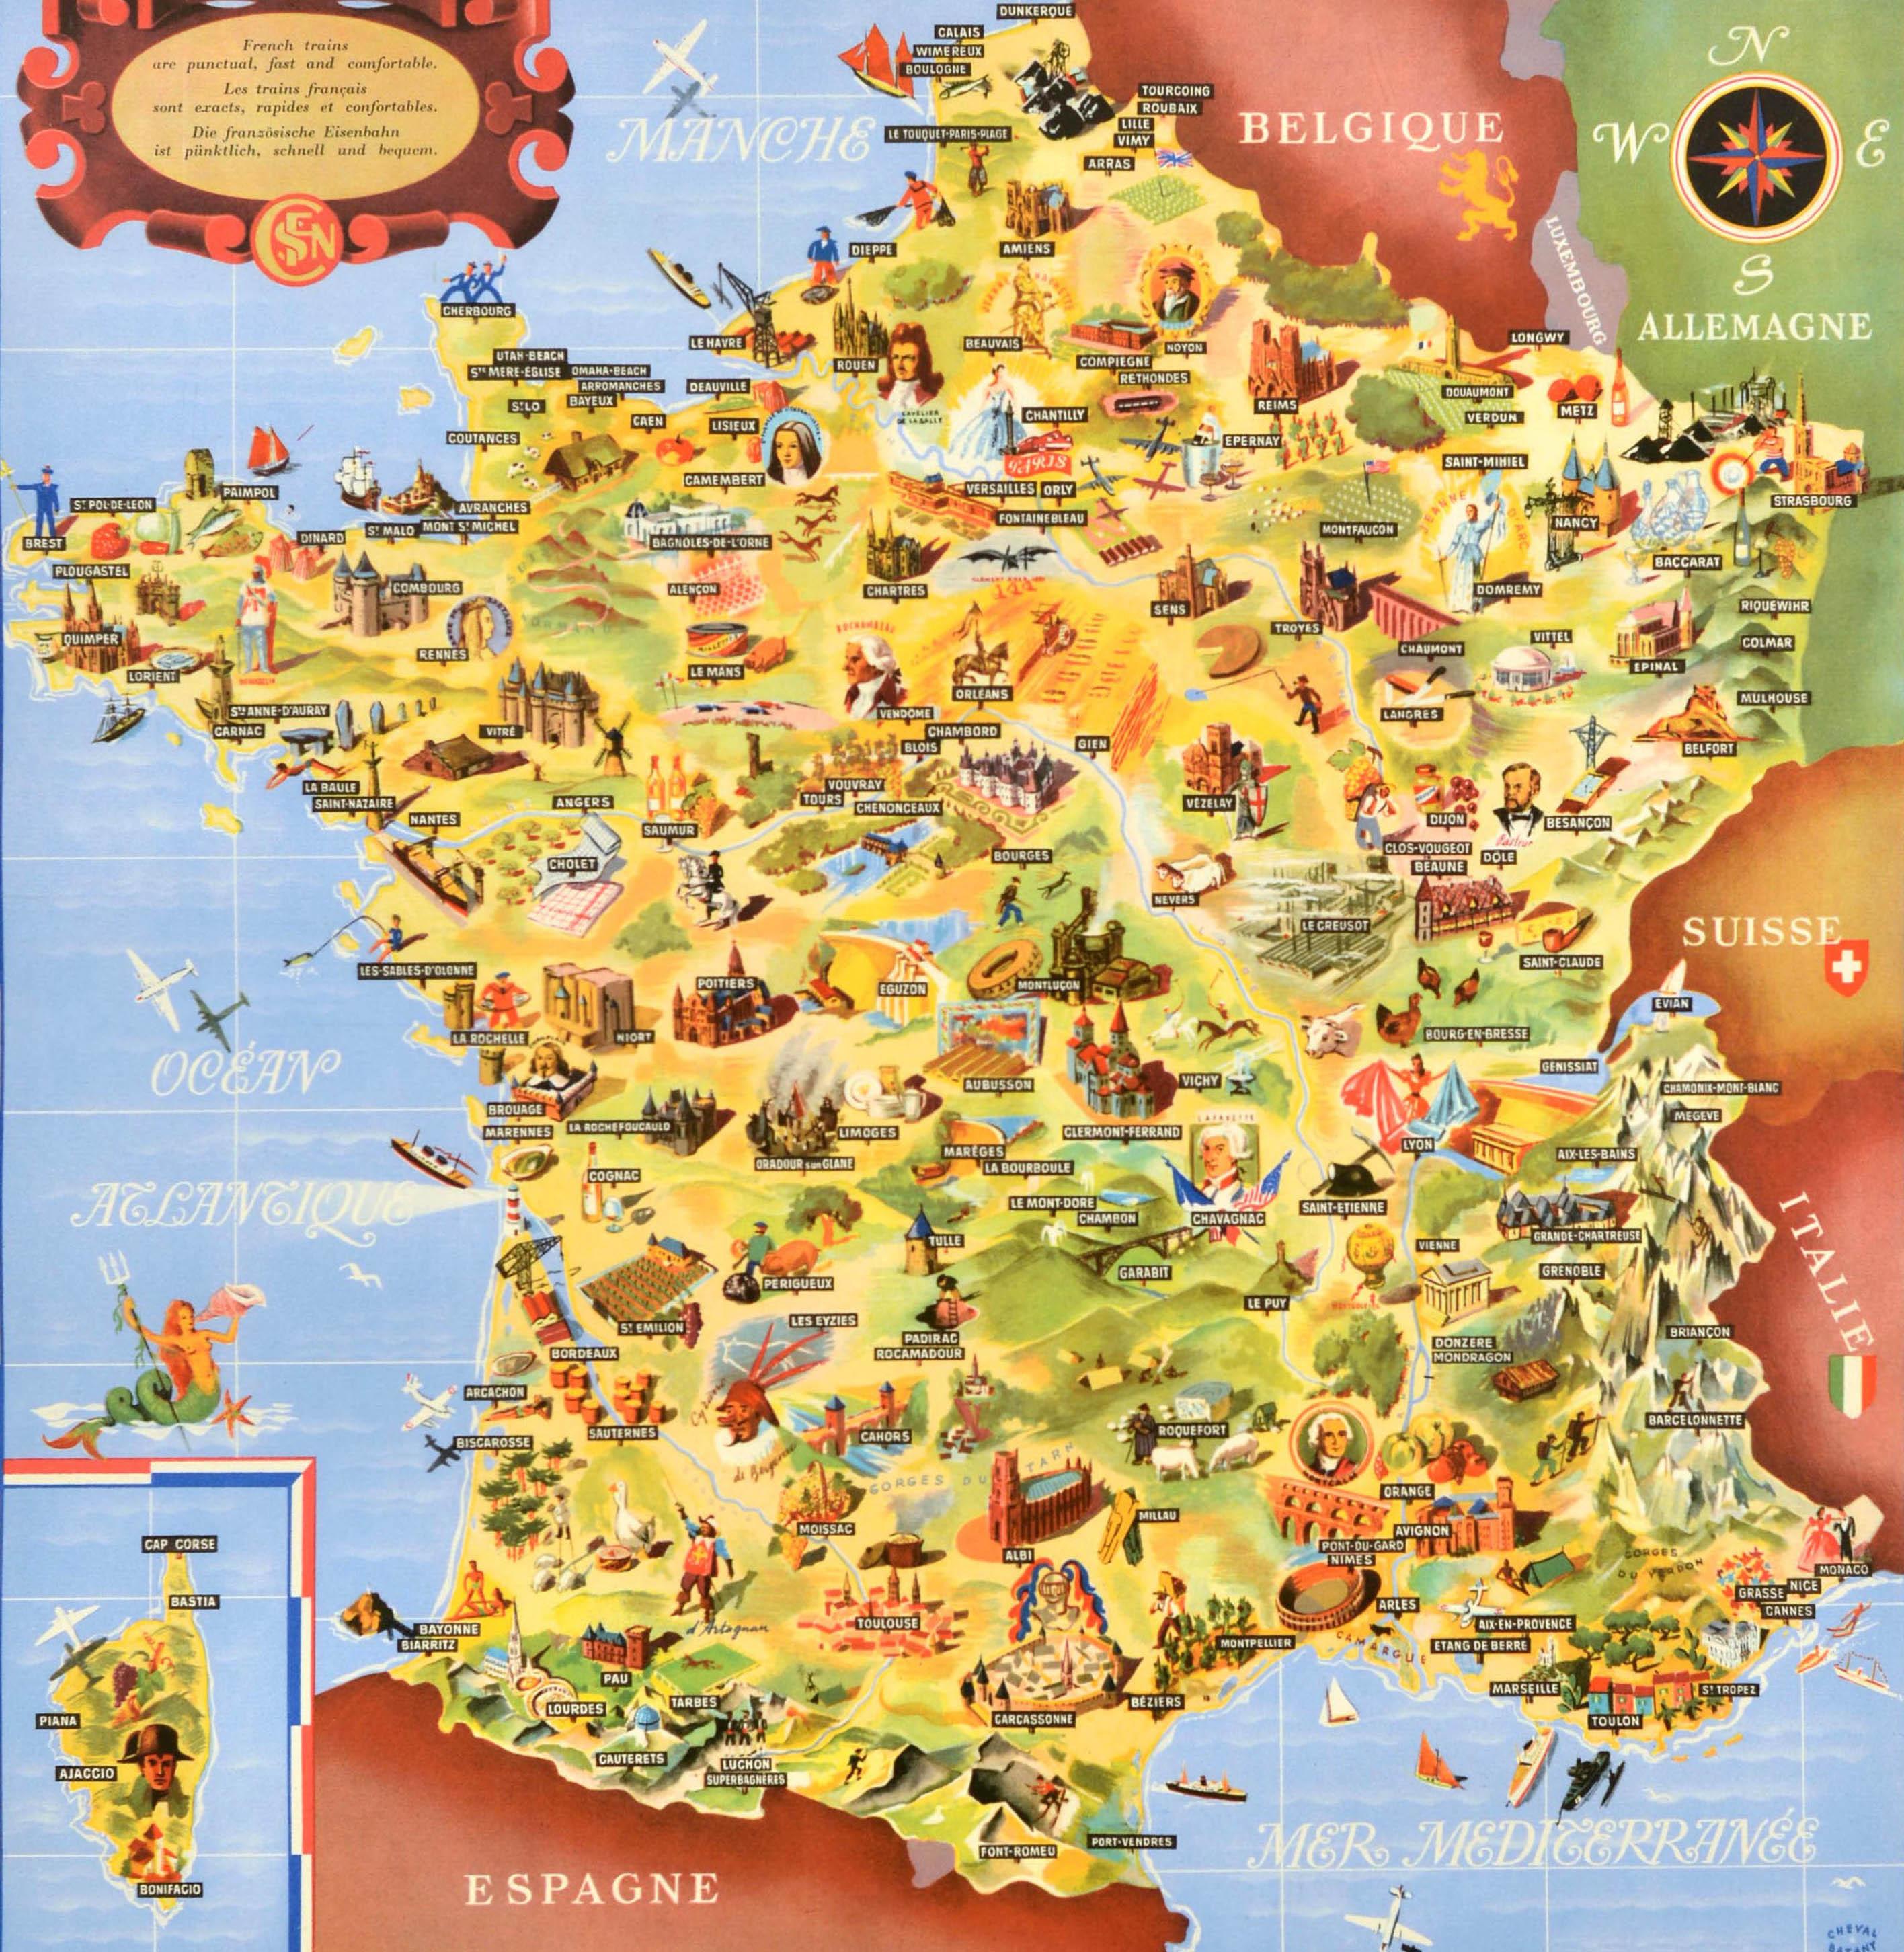 Originale Eisenbahn-Reisekarte im Vintage-Stil - Frankreich Societe Nationale des Chemins de Fer Francais - mit einer farbig illustrierten Karte von Jean Cheval und Alex Batany (als Cheval-Batany), auf der Sehenswürdigkeiten und Wahrzeichen wie alte